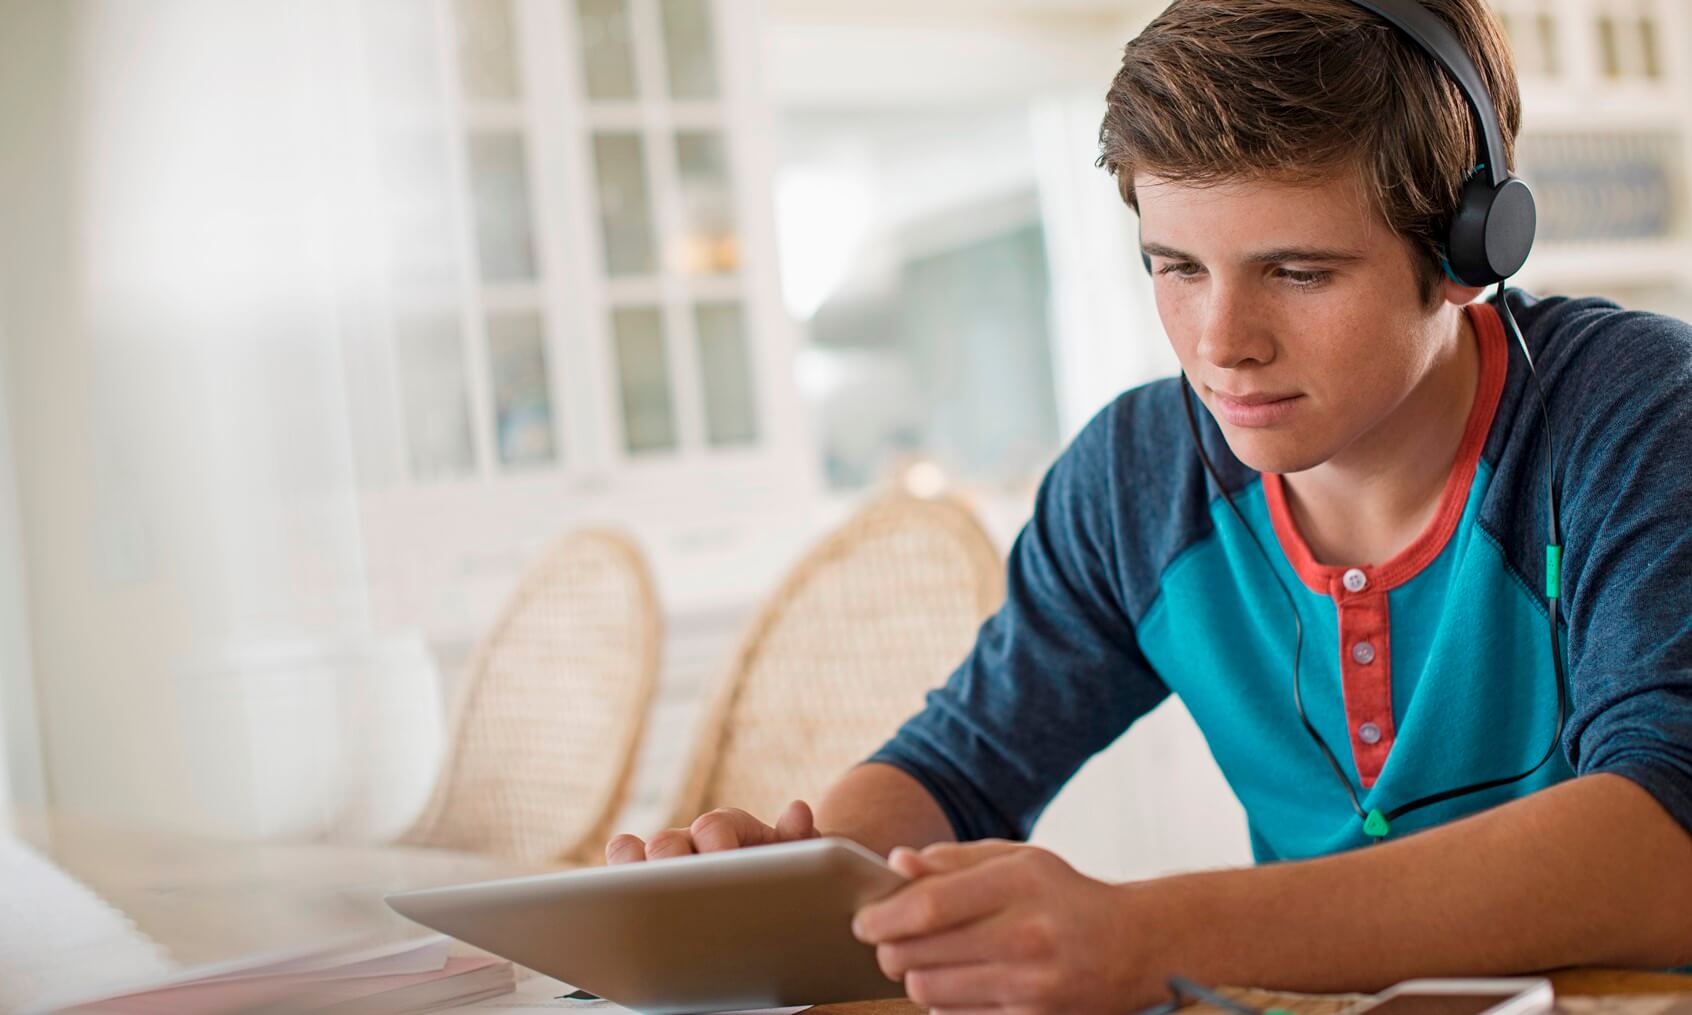 Teenage boy (13-15 years old) using digital tablet